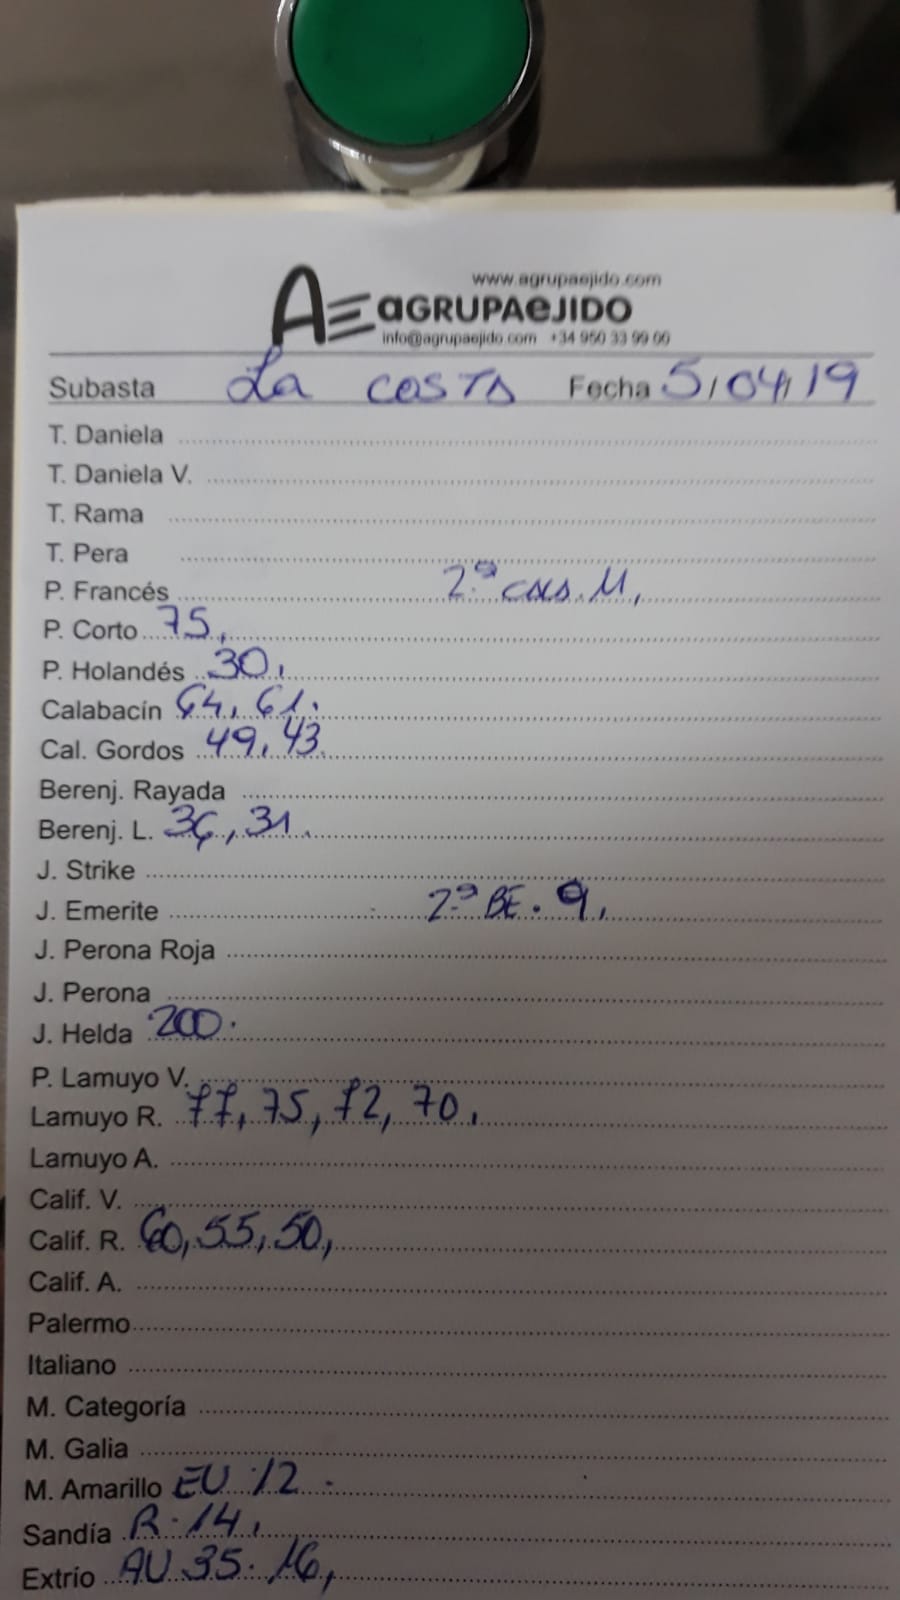 Subasta hortofrutícola AgrupaEjido La Costa 5 de Abril 2019